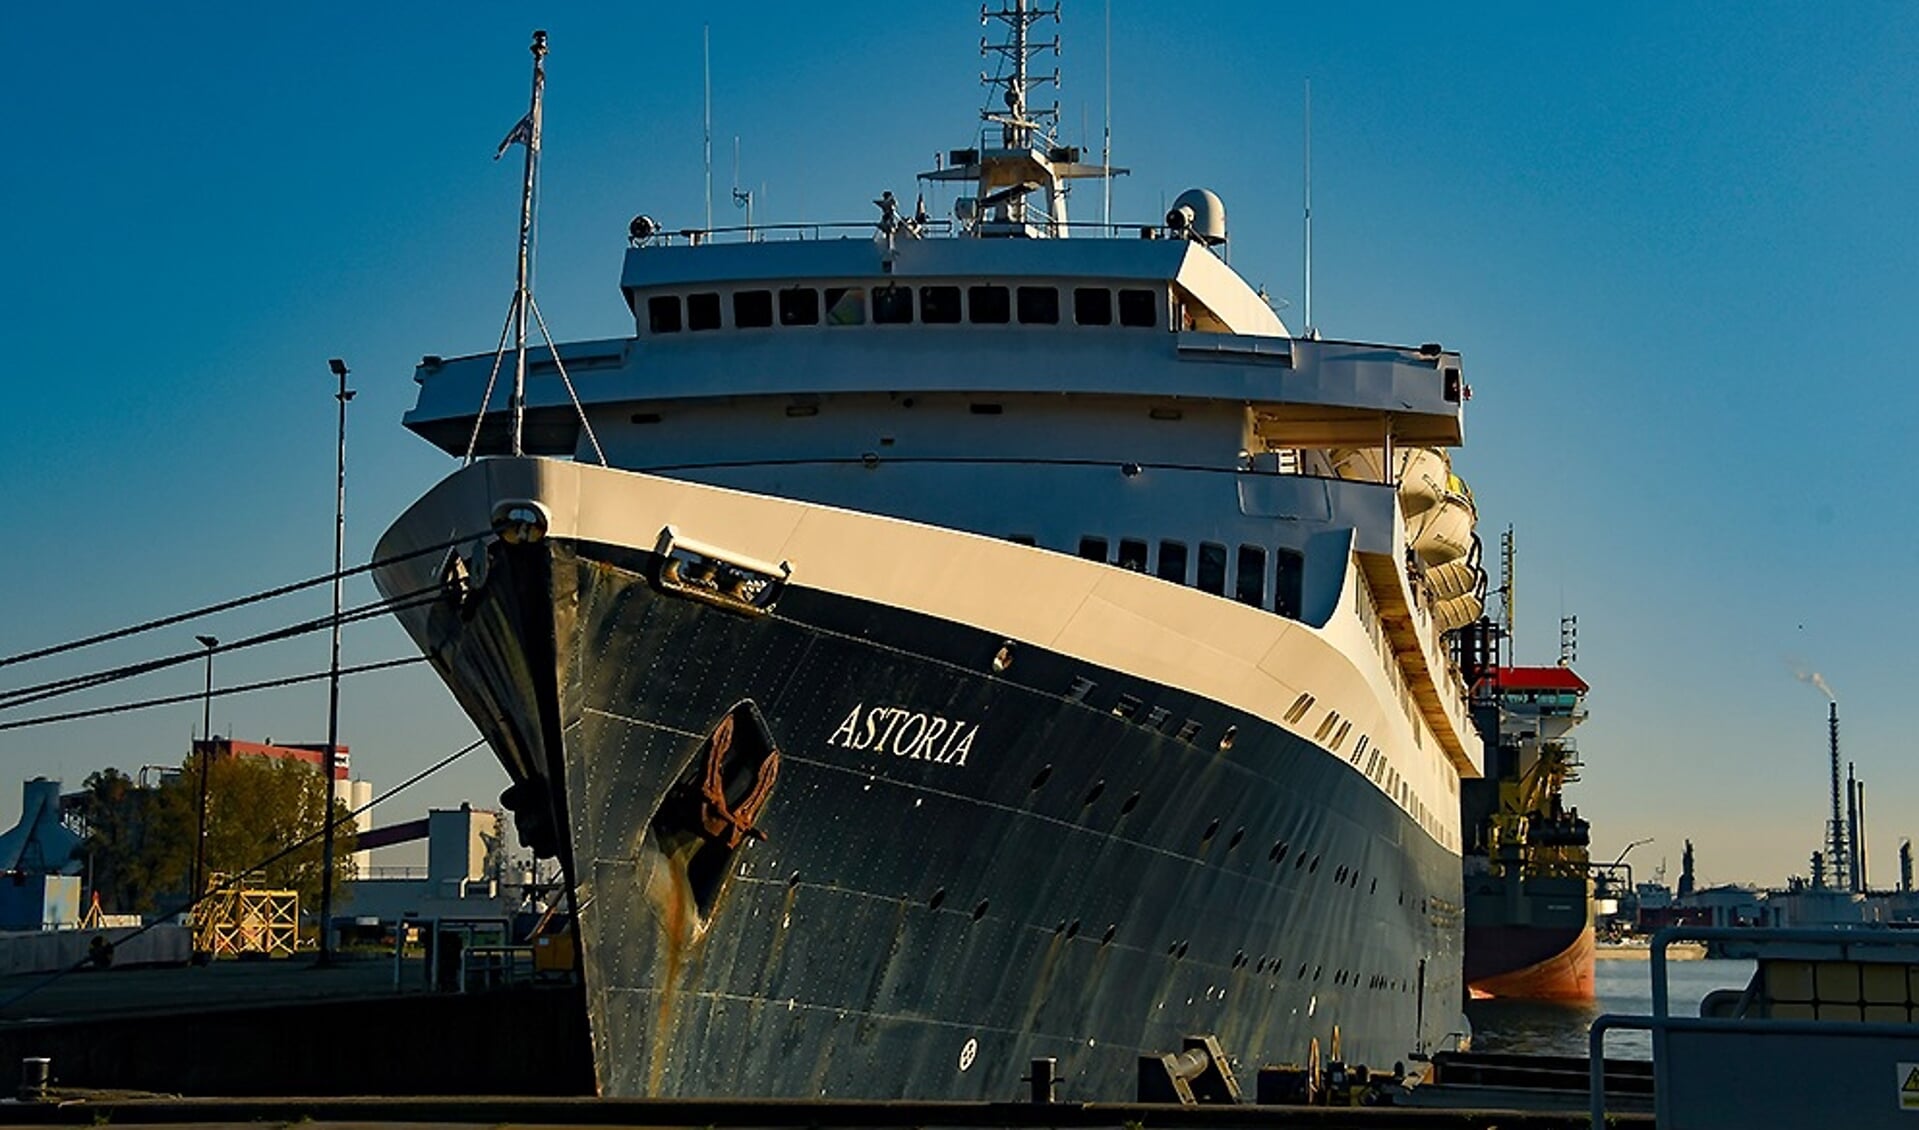 De Astoria nog voordat zij uit de vaart ging, foto uit 2019. Het schip ligt sinds eind 2020 nog steeds aan de kade Waalhaven Noordzijde. Foto: Nicoline Hoogesteger